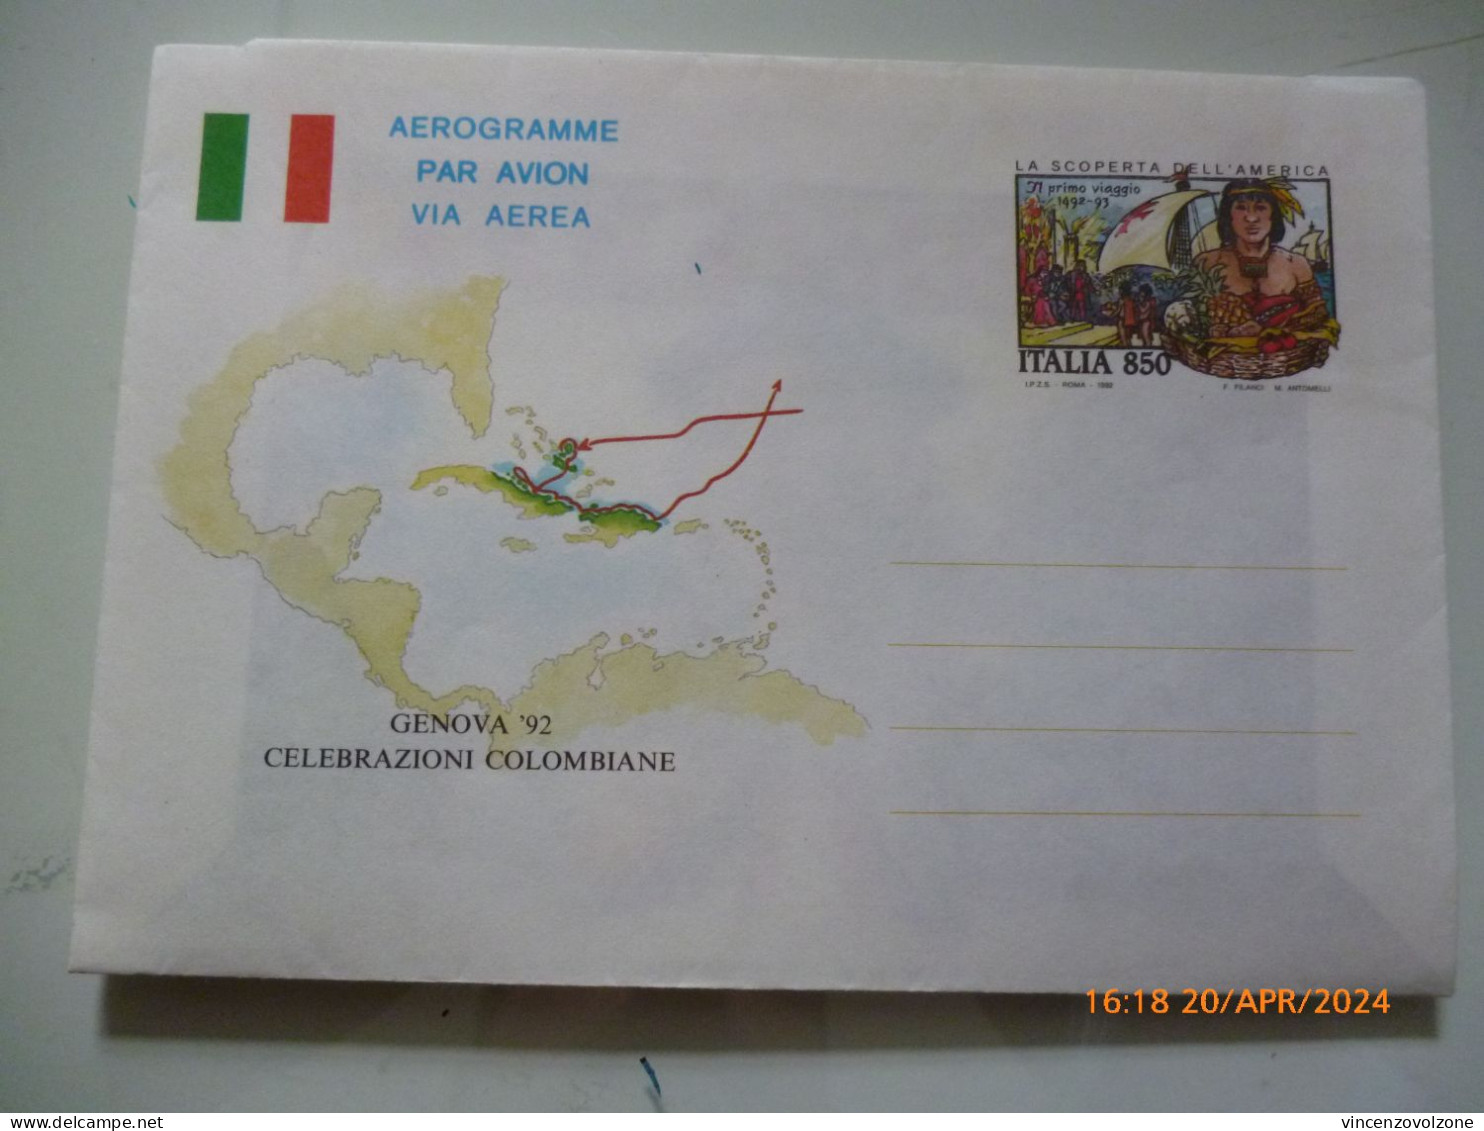 Biglietto Postale "GENOVA '92 CELEBRAZIONI COLOMBIANE" - 1991-00: Poststempel